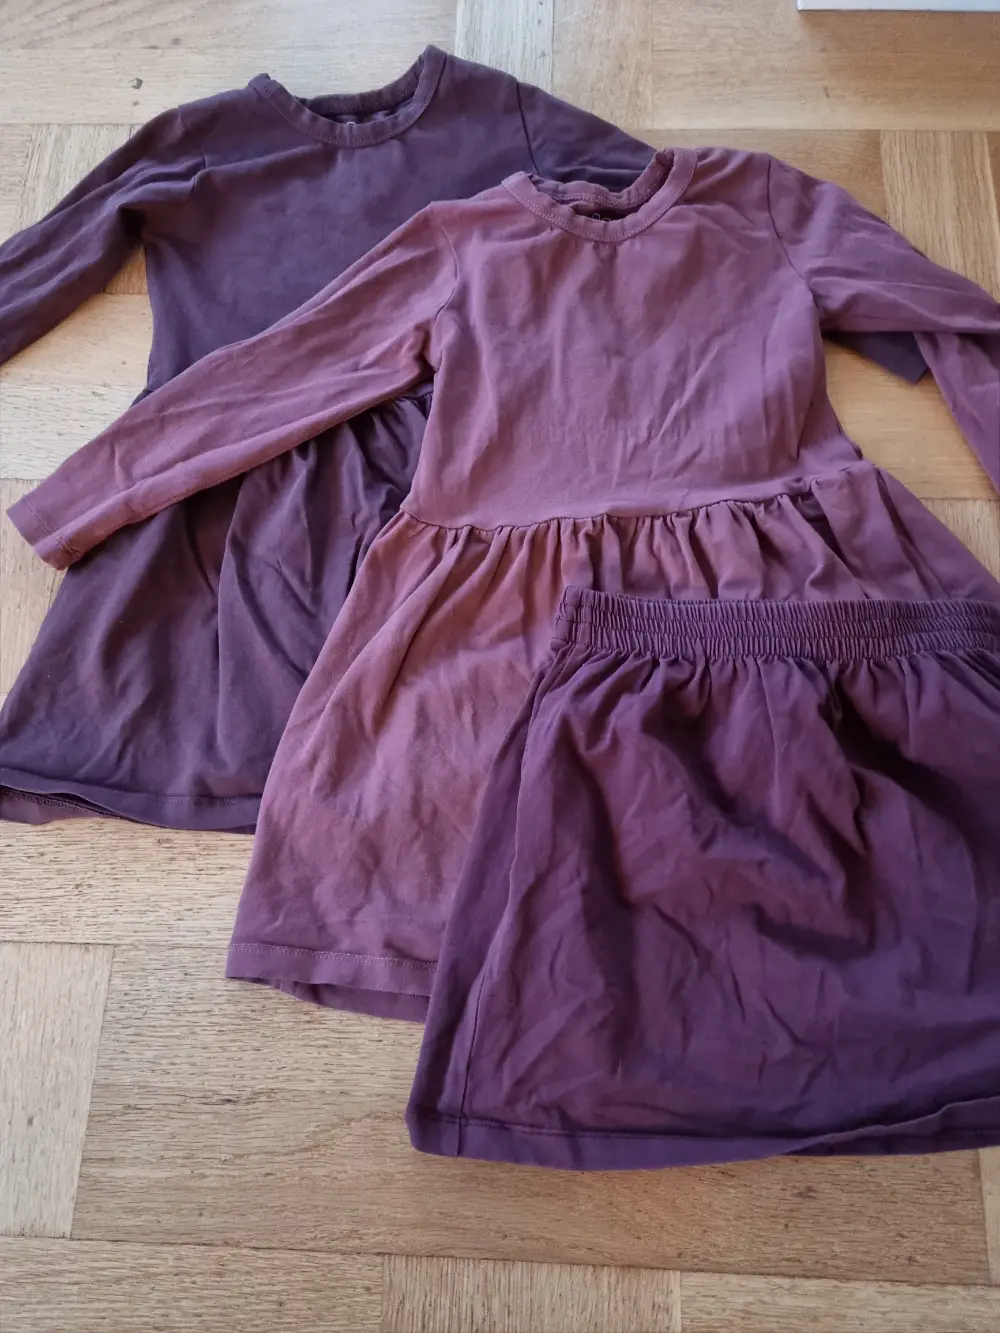 Etablere Allergisk Misbruge Køb O'Neil of Dublin Kjole i uld i størrelse 104 af Heidi på Reshopper ·  Shop secondhand til børn, mor og bolig